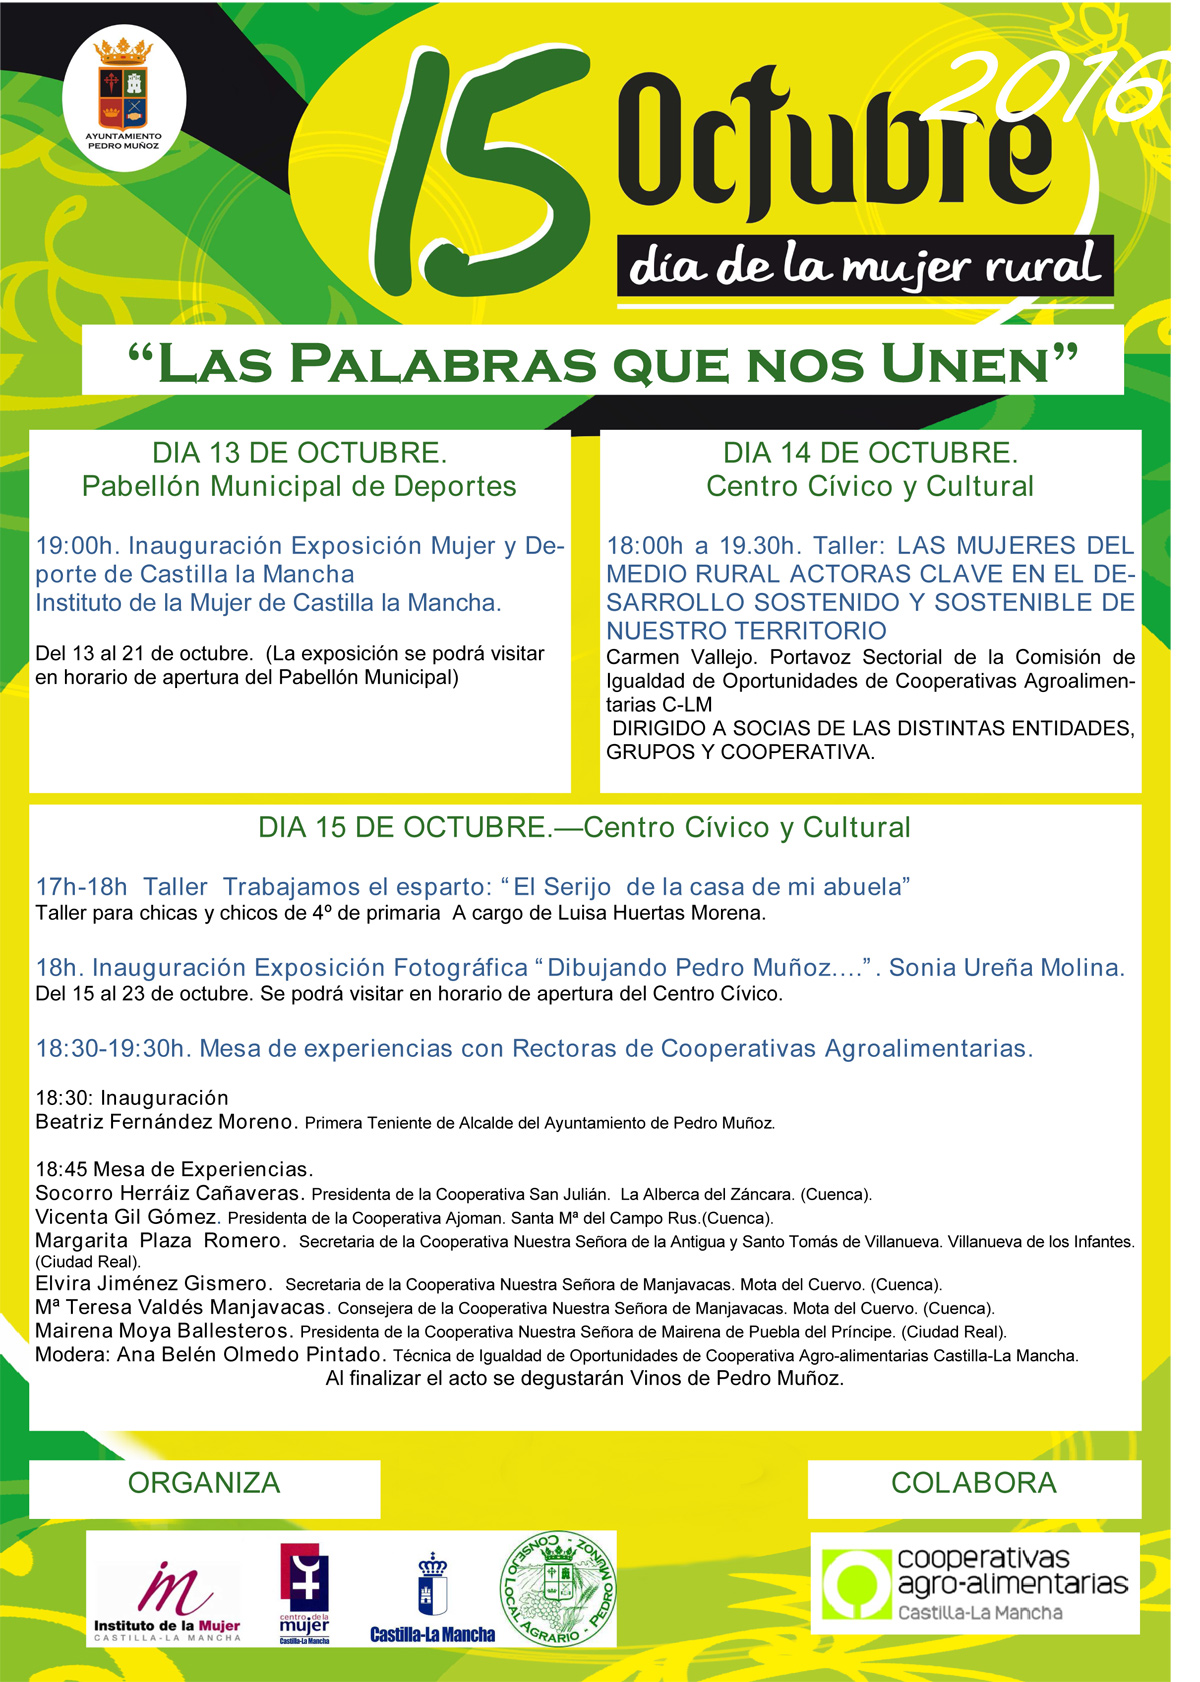 El Ayuntamiento de Pedro Muñoz,  APUESTA POR    LA PARTICIPACIÓN  REAL Y EFECTIVA DE LAS MUJERES EN  LOS ESPACIOS  DE DECISIÓN  DEL MUNDO  AGRARIO  en la conmemoración del Día de la Mujer Rural el próximo 15 de Octubre